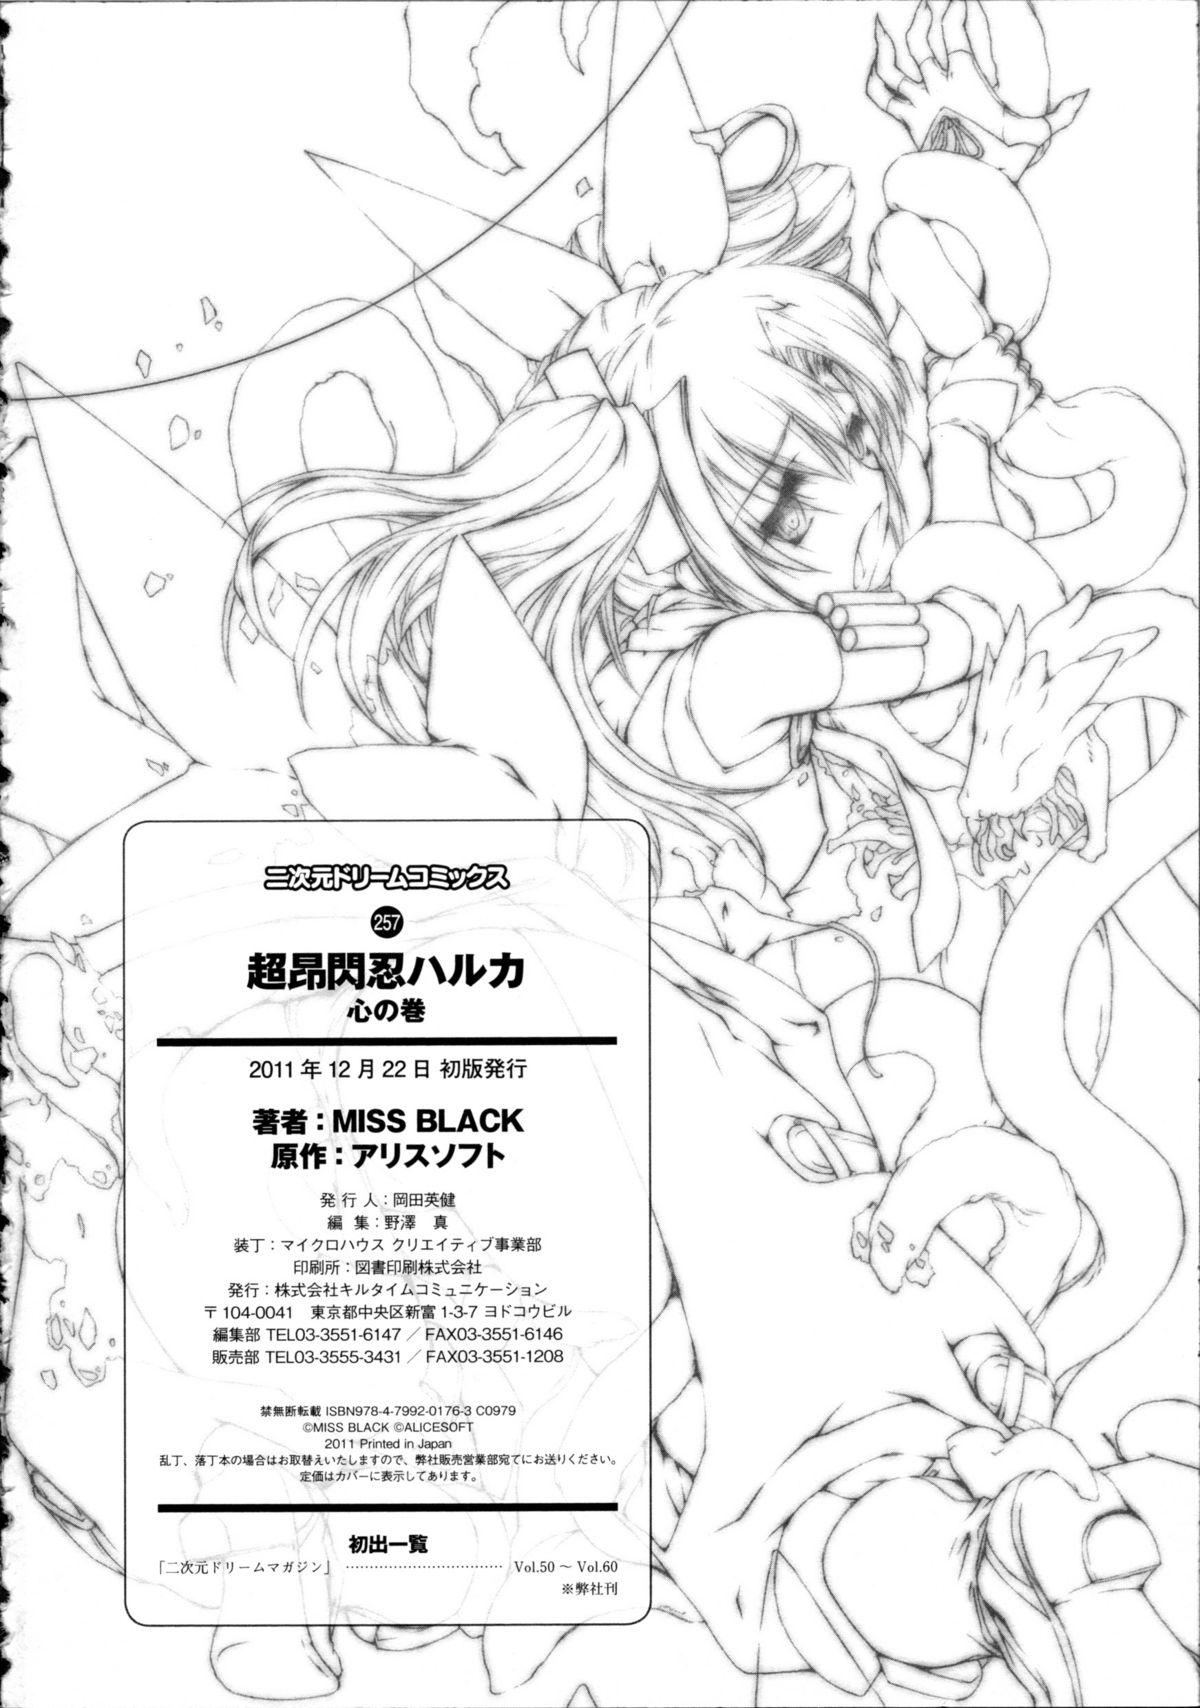 Arab Choukou Sennin Haruka Kokoro no Maki - Beat blades haruka Massage - Page 243